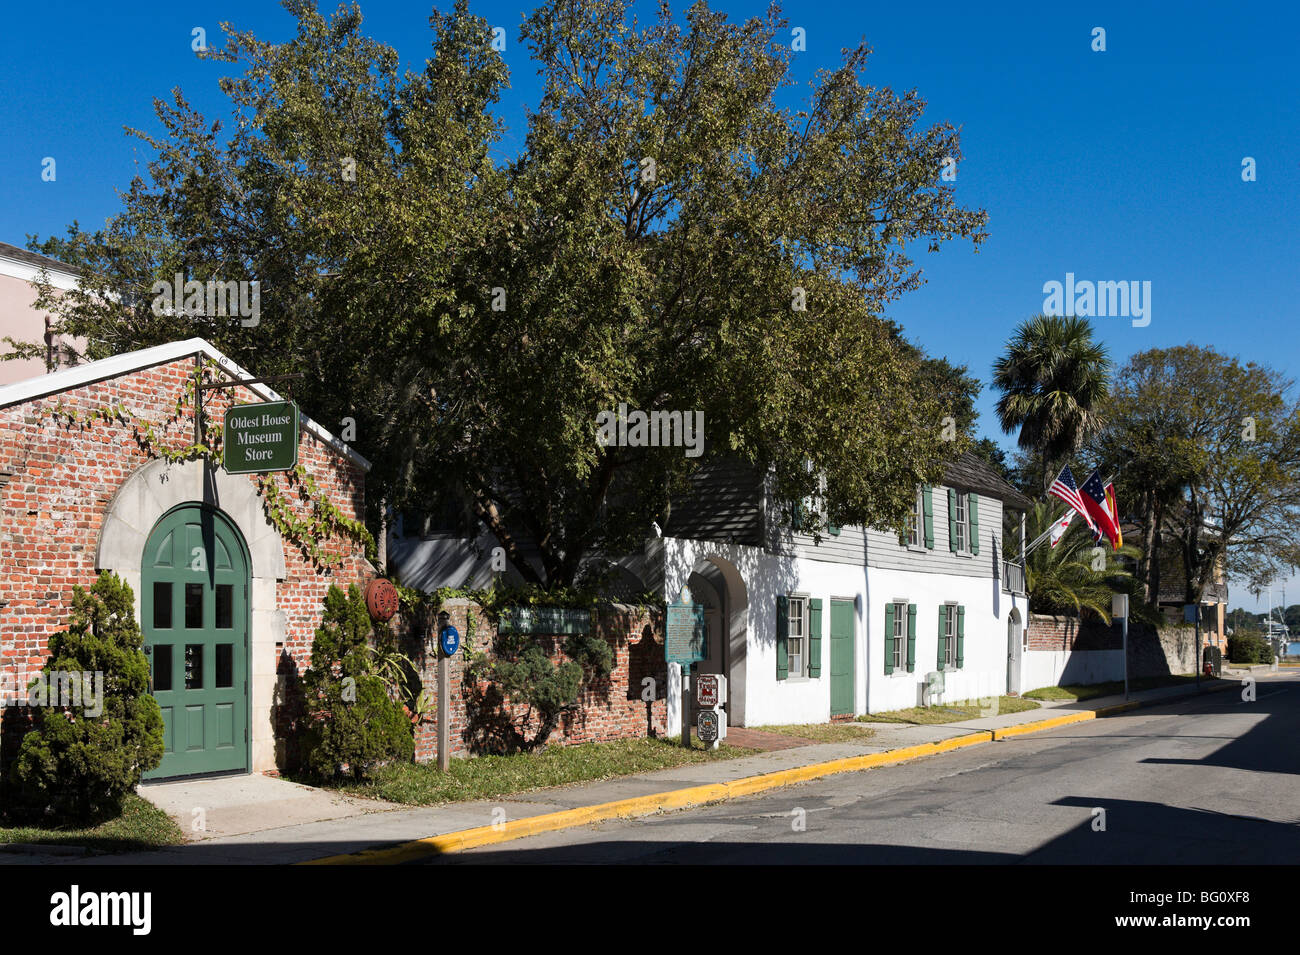 La più antica casa (l'González Alvarez-House) e il Museum Shop, San Francesco Street, St Augustine, Florida, Stati Uniti d'America Foto Stock